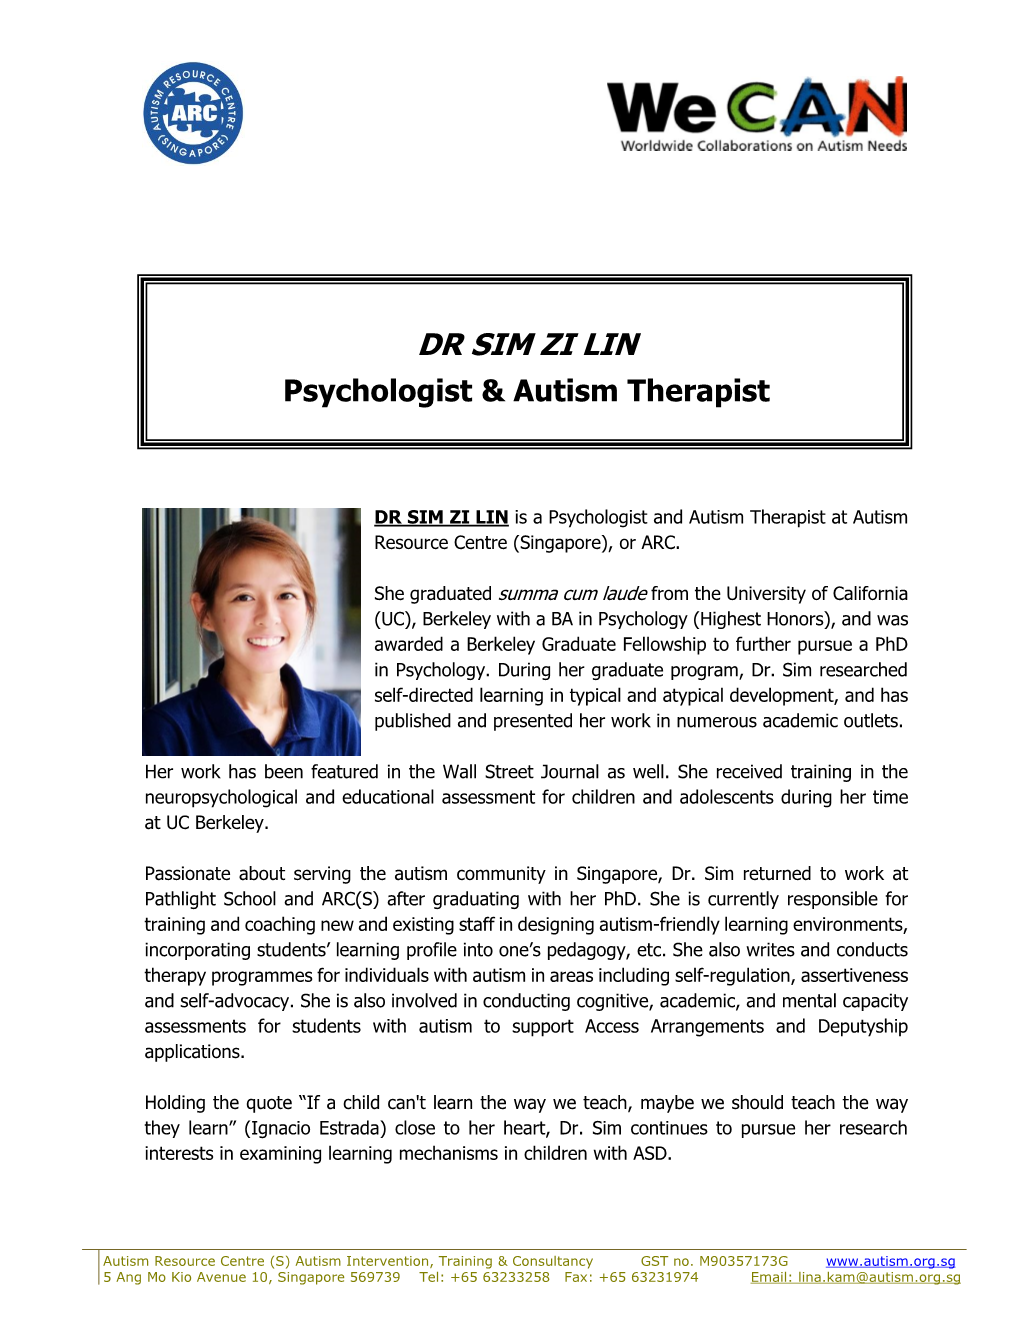 DR SIM ZI LIN Psychologist & Autism Therapist